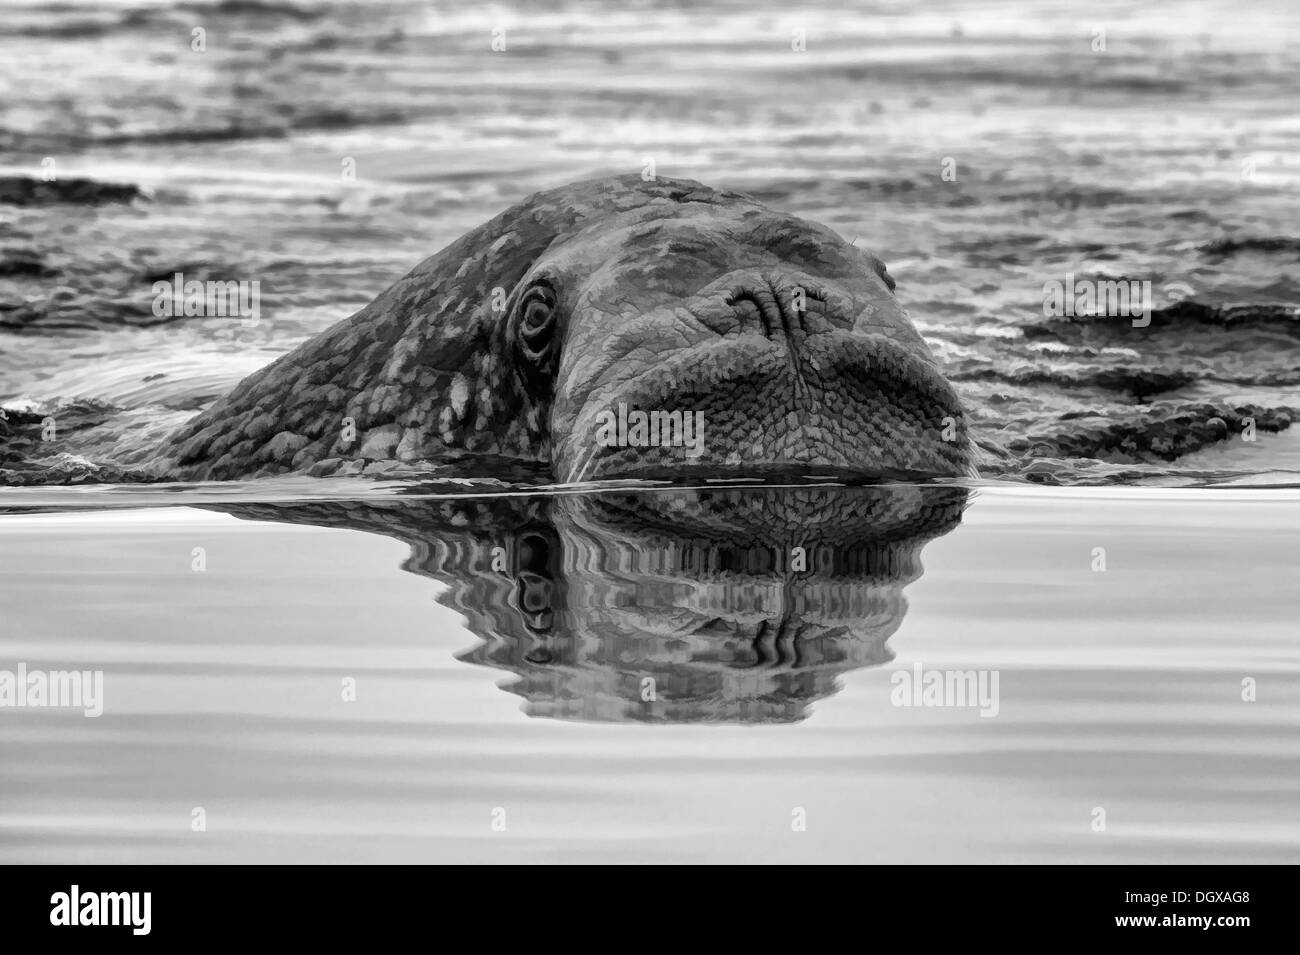 Le morse (Odobenus rosmarus) dans l'eau, Krassine Bay, l'île Wrangel, Chuckchi Mer, Tchoukotka, Extrême-Orient russe Banque D'Images